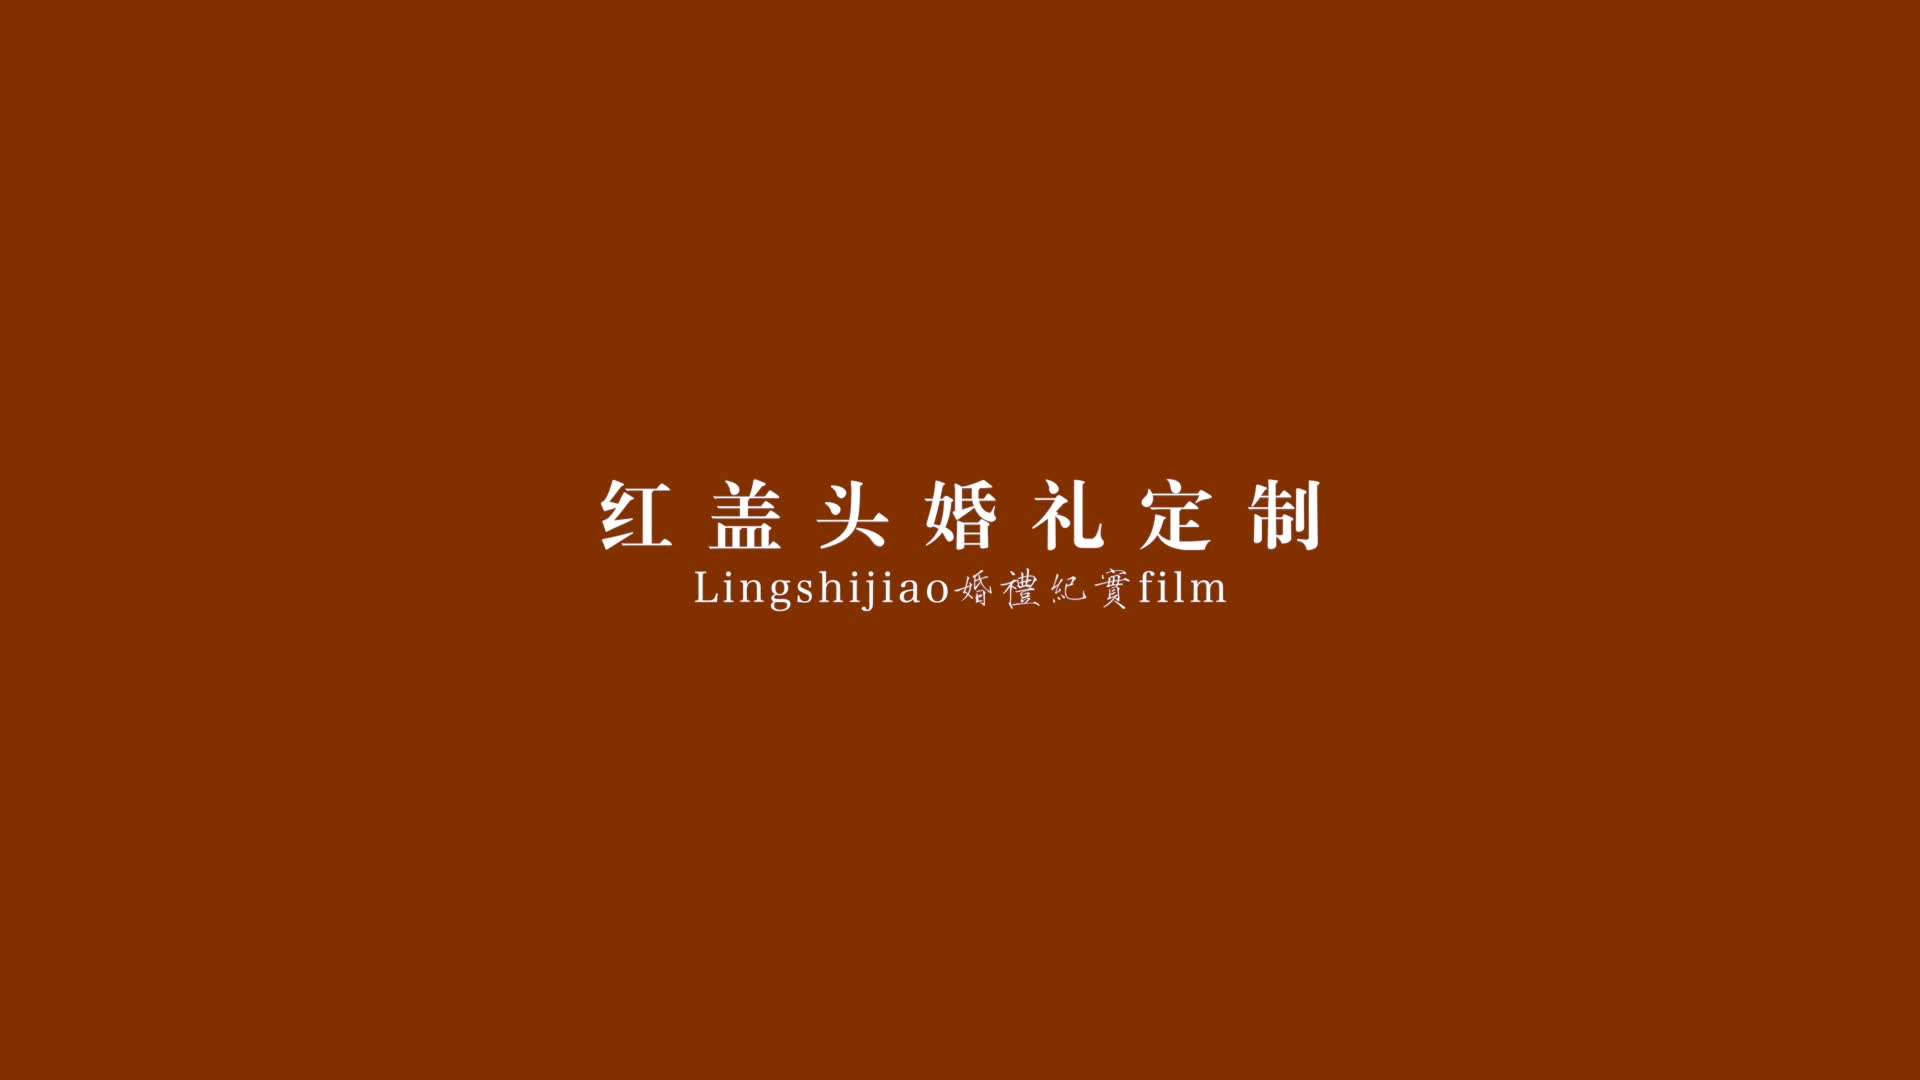 2023.05.28【李清书&张潇潇】纪实婚礼快剪/红盖头婚礼定制